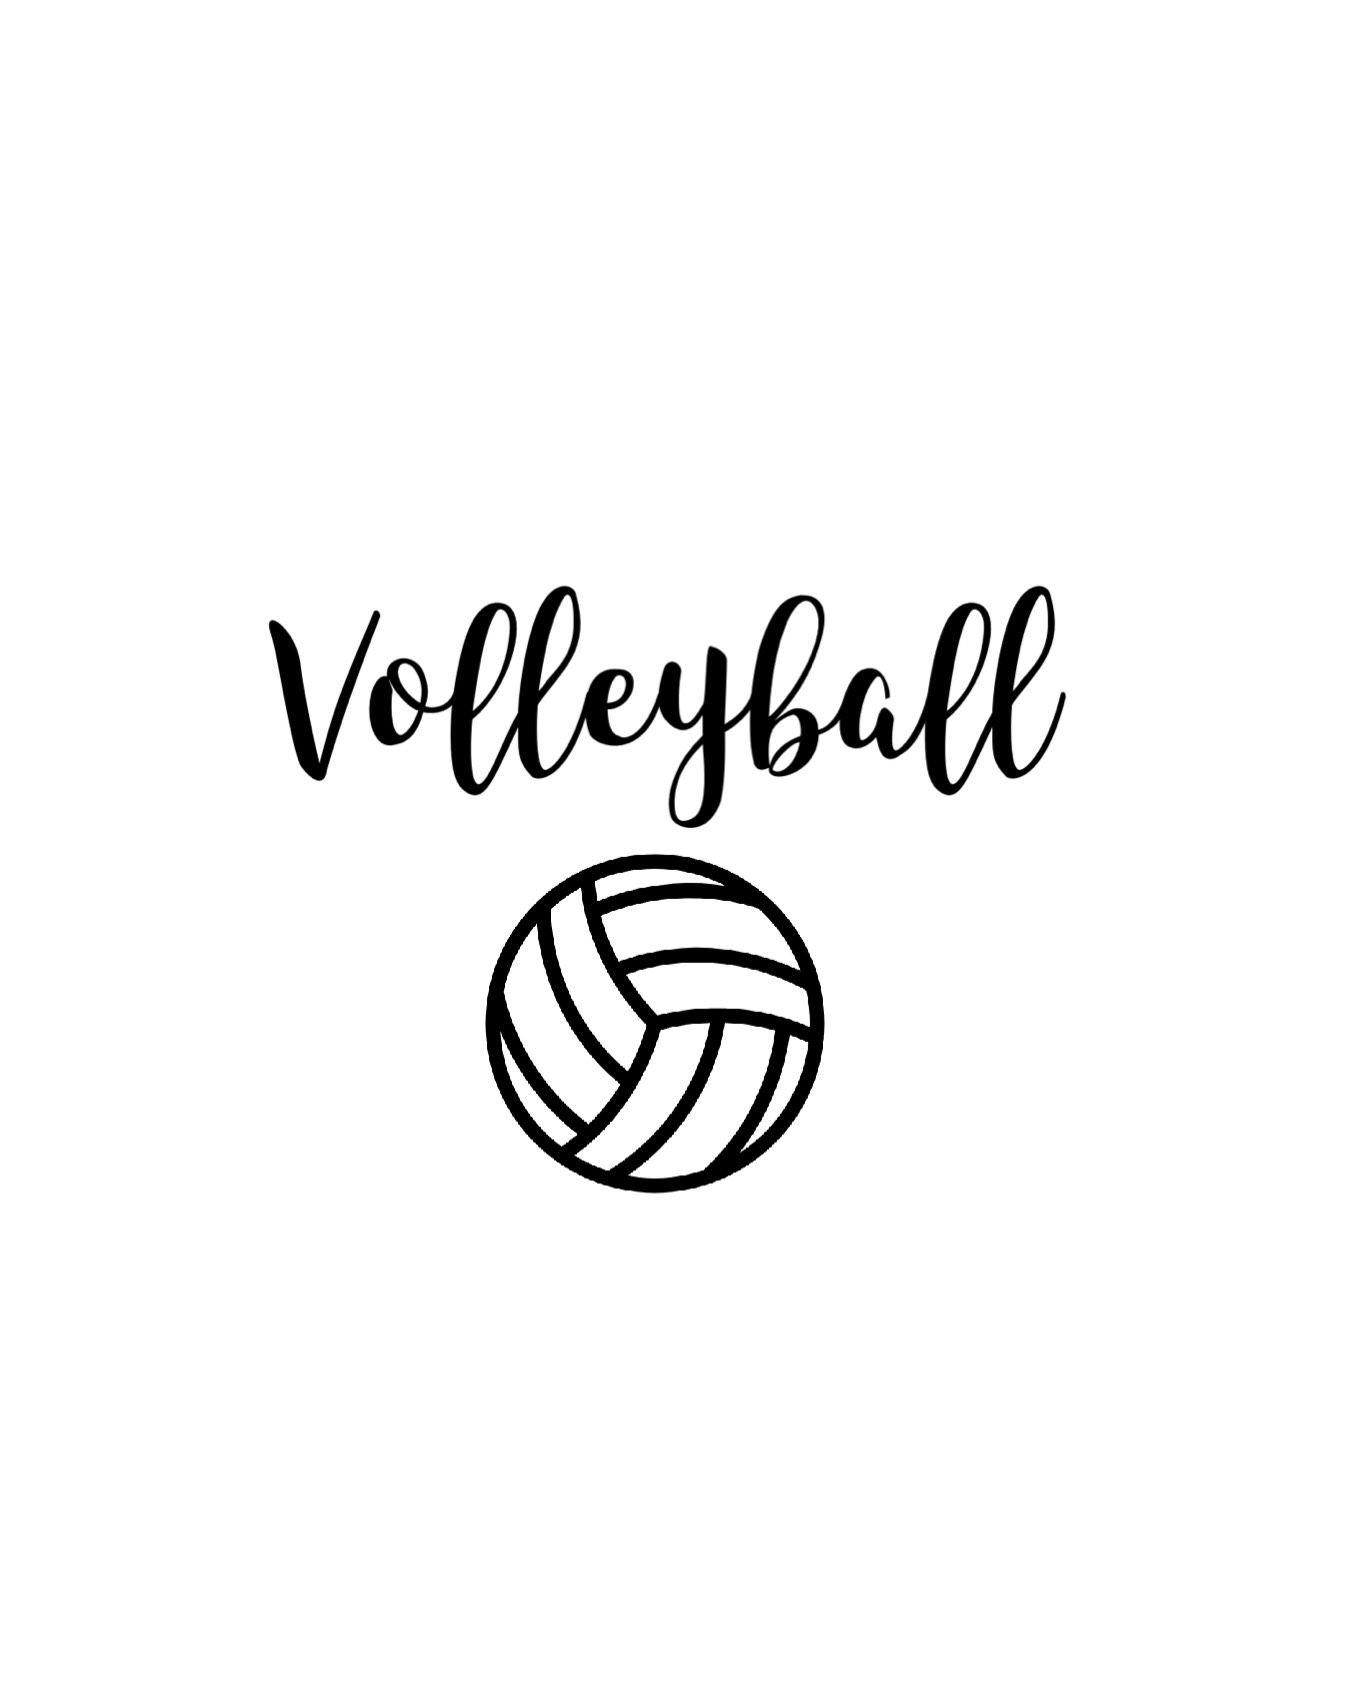 v o Ɩ Ɩ ɛ y b a Ɩ Ɩ. Volleyball, Volleyball